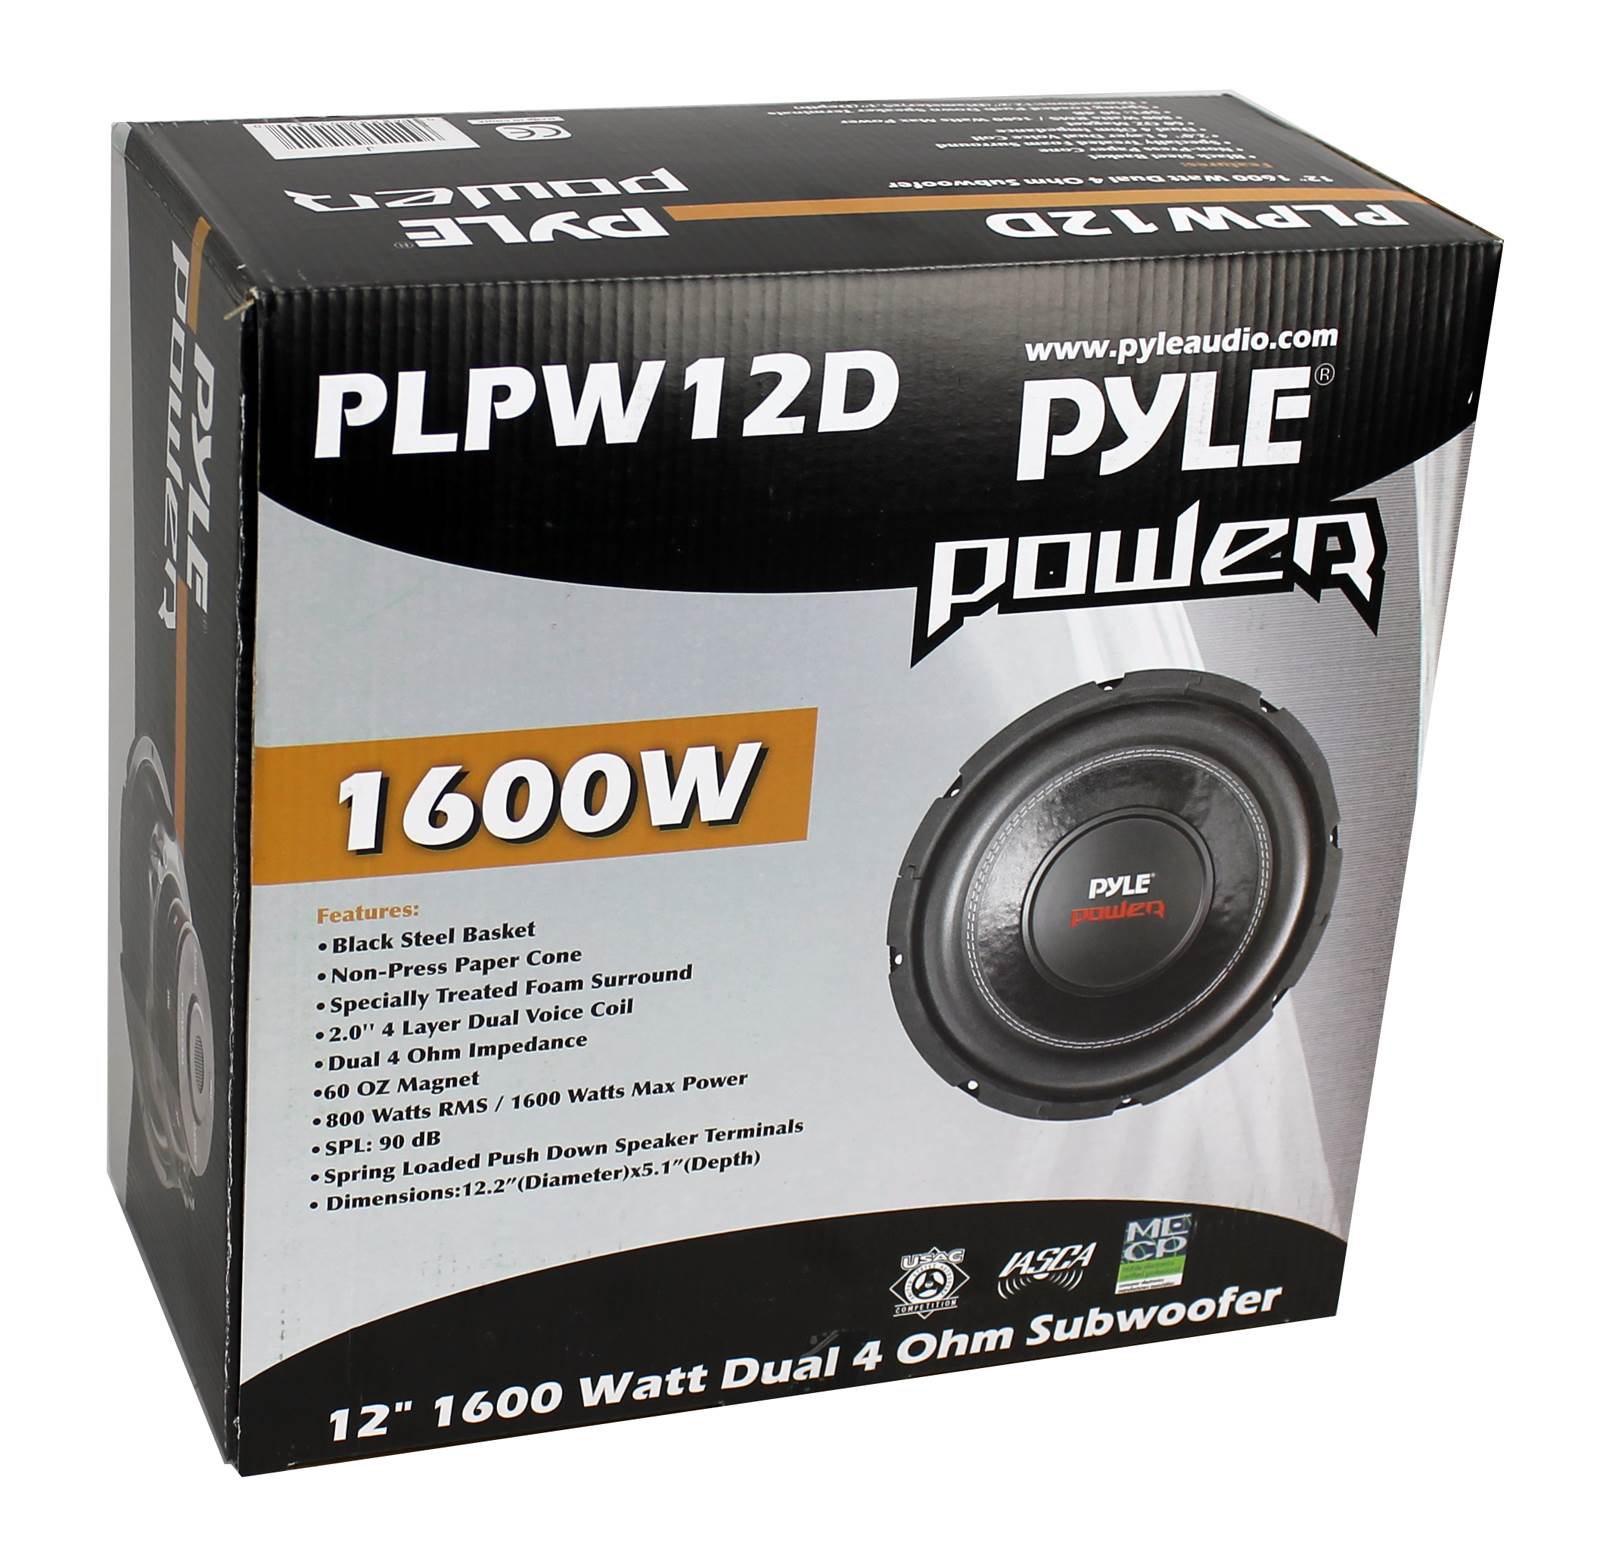 NEW Pyle PLPW12D 12'' 1600 Watt Dual Voice Coil 4 Ohm Subwoofer